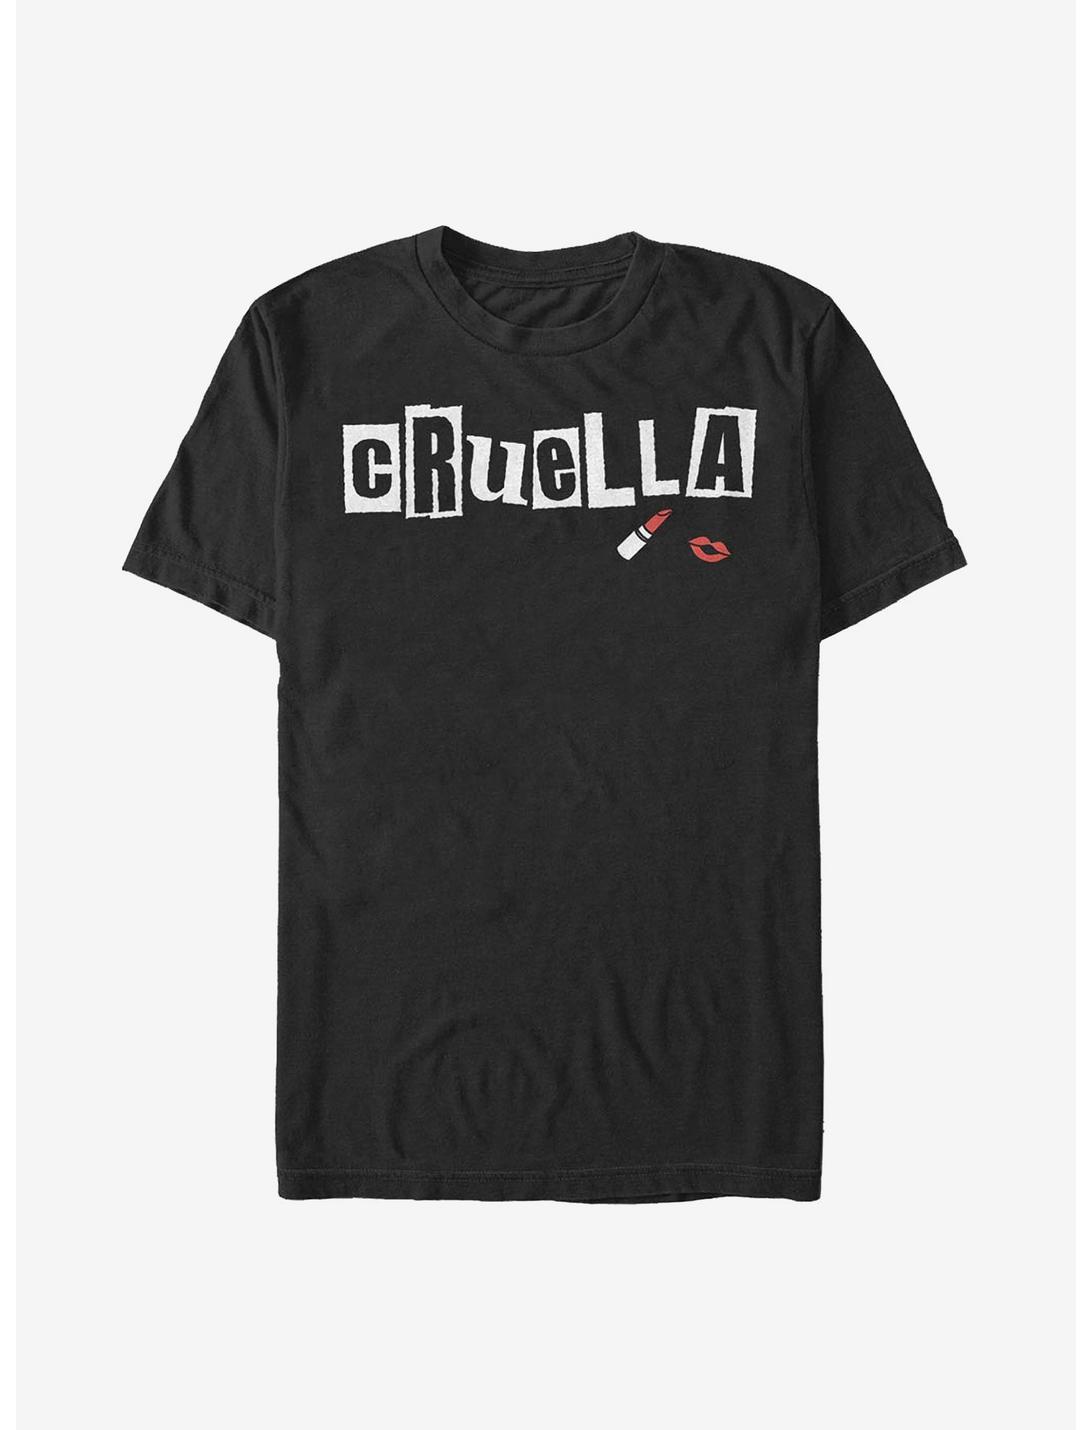 Disney Cruella Name Cut Out Letters T-Shirt, BLACK, hi-res